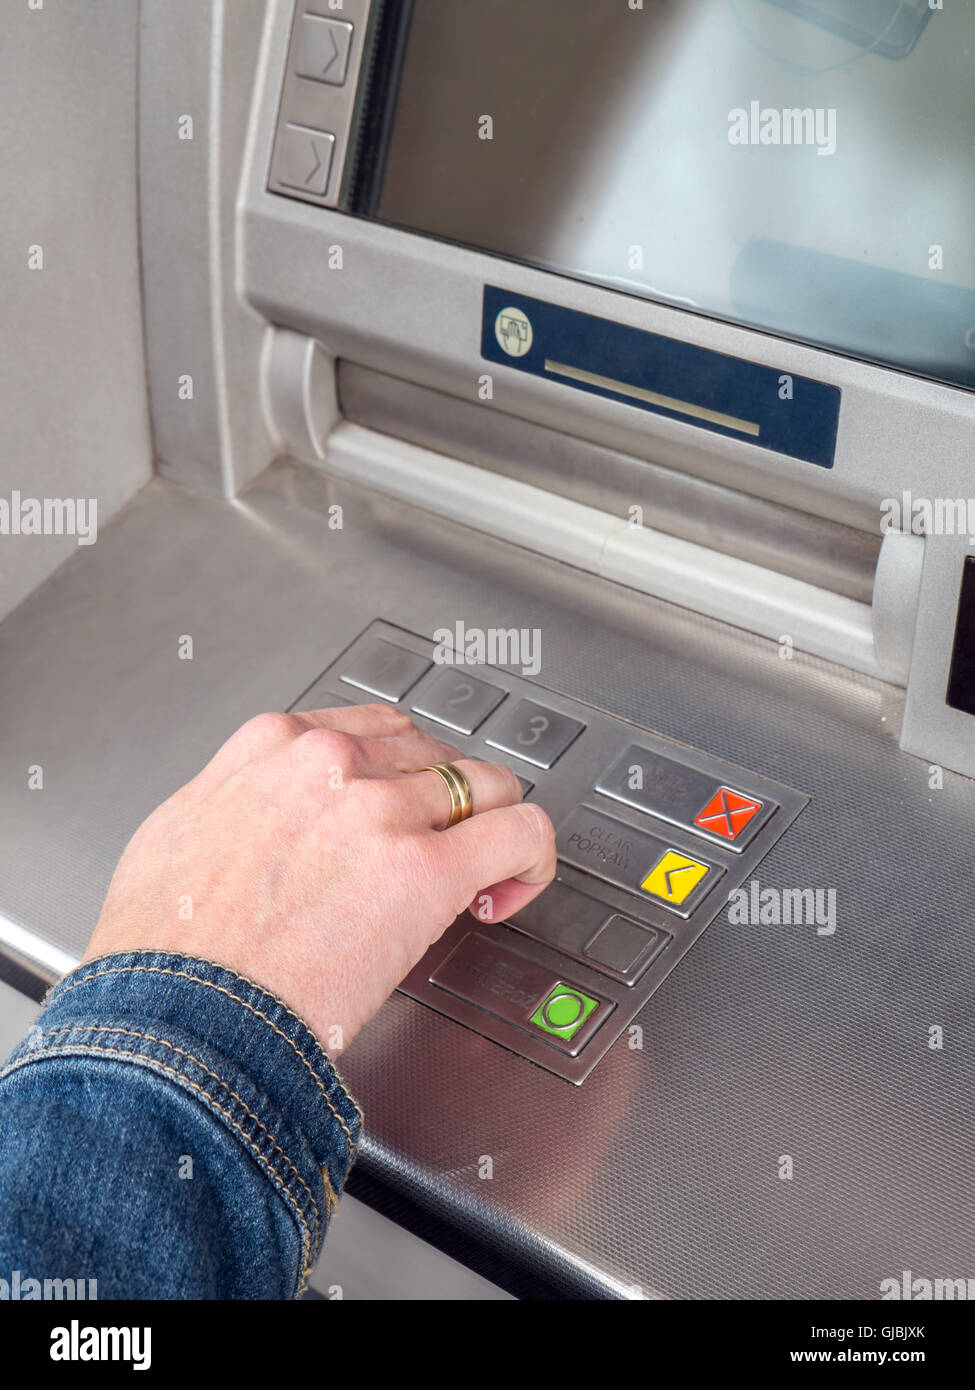 Primer plano de la mano de mujer introduciendo el código PIN en el teclado de la máquina ATM Foto de stock